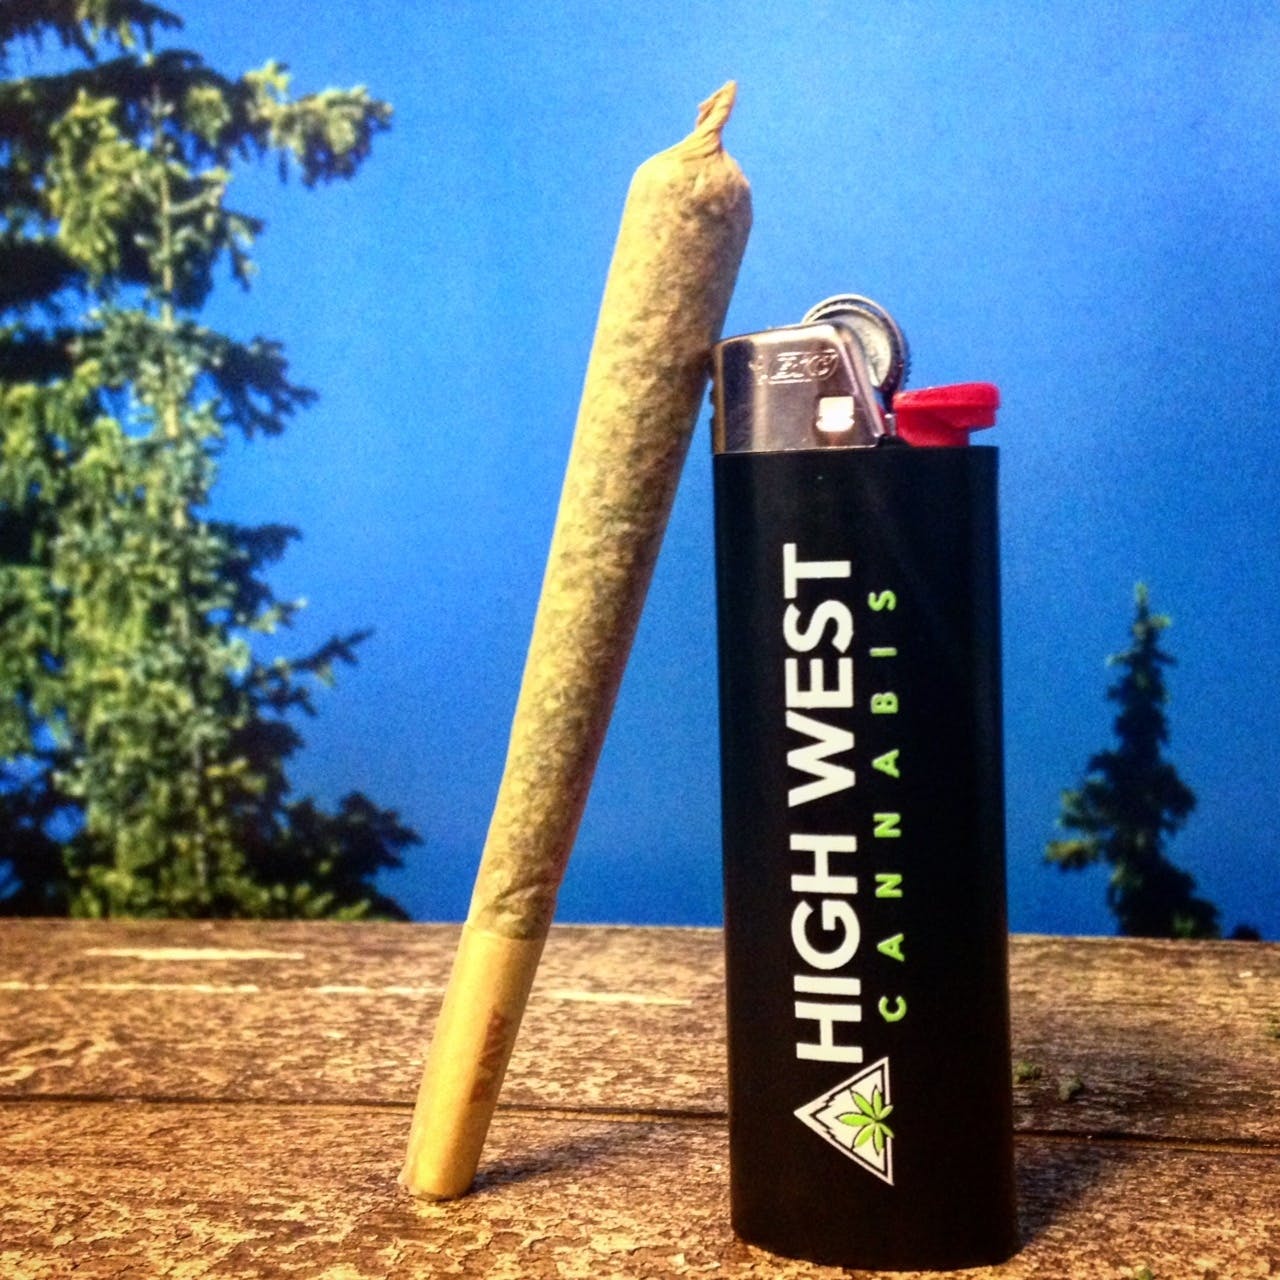 Lighter - High West - $4